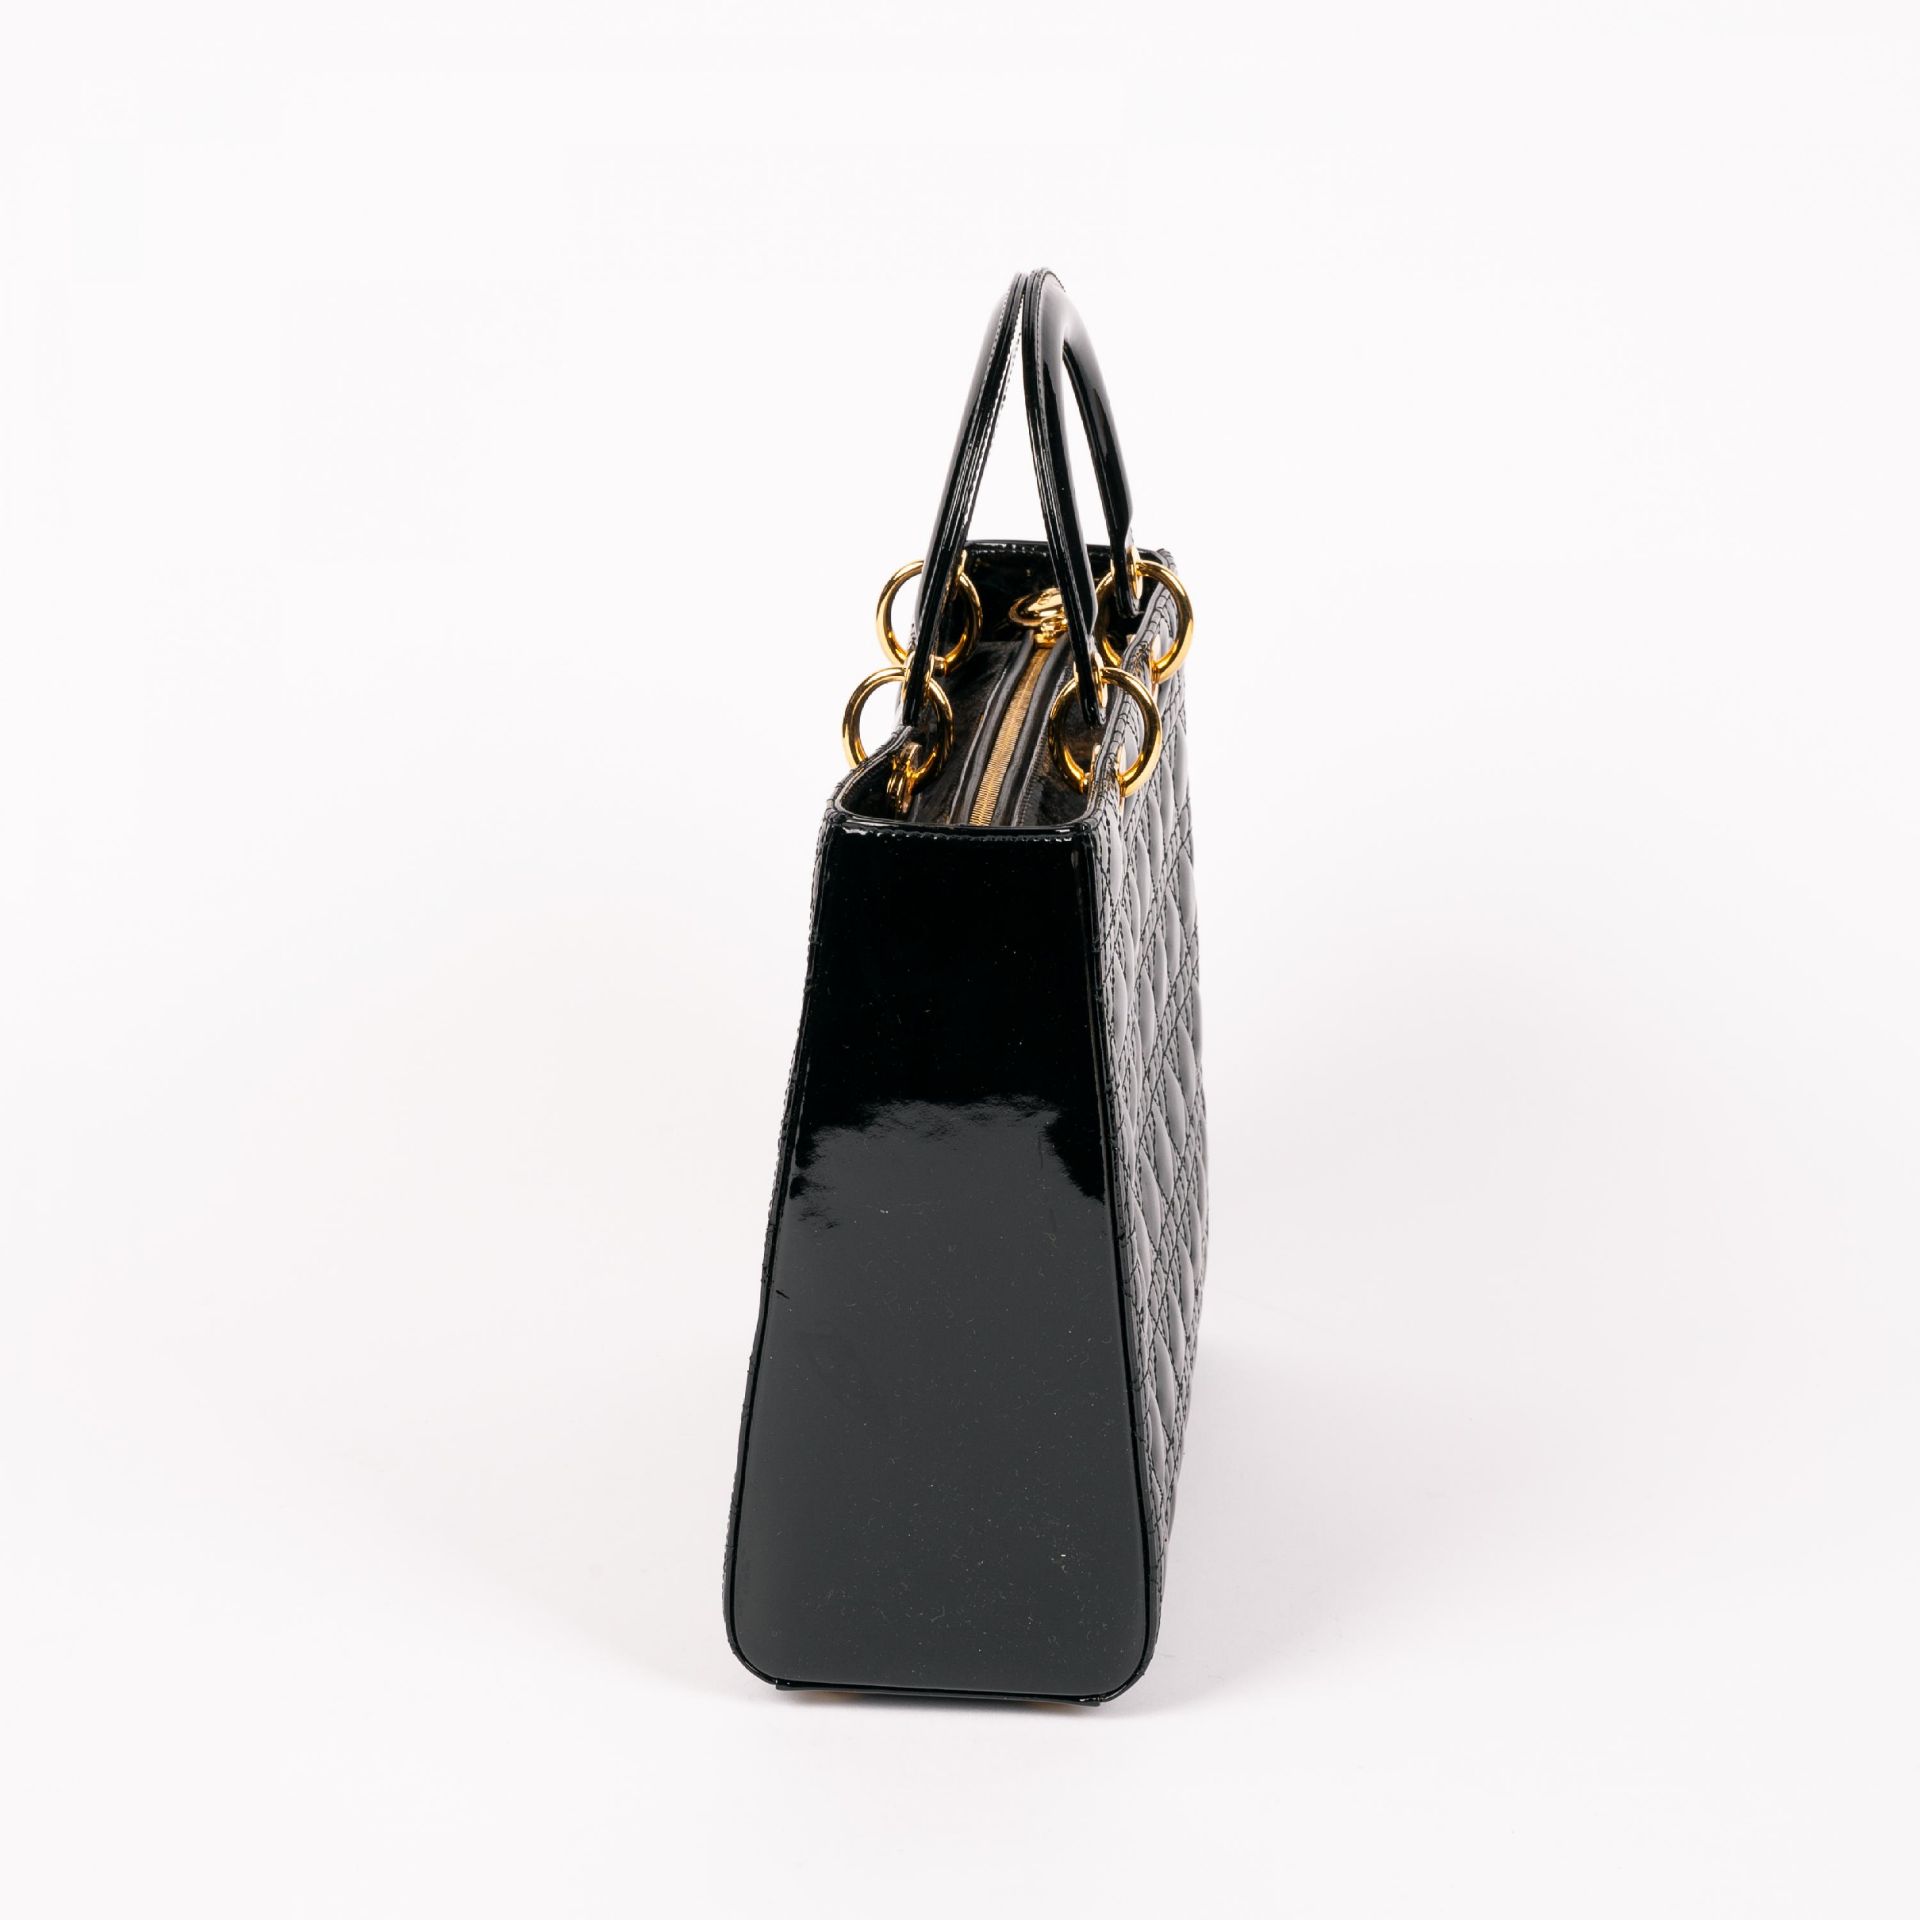 Christian Dior: Handtasche 'Lady Dior' - Bild 4 aus 6